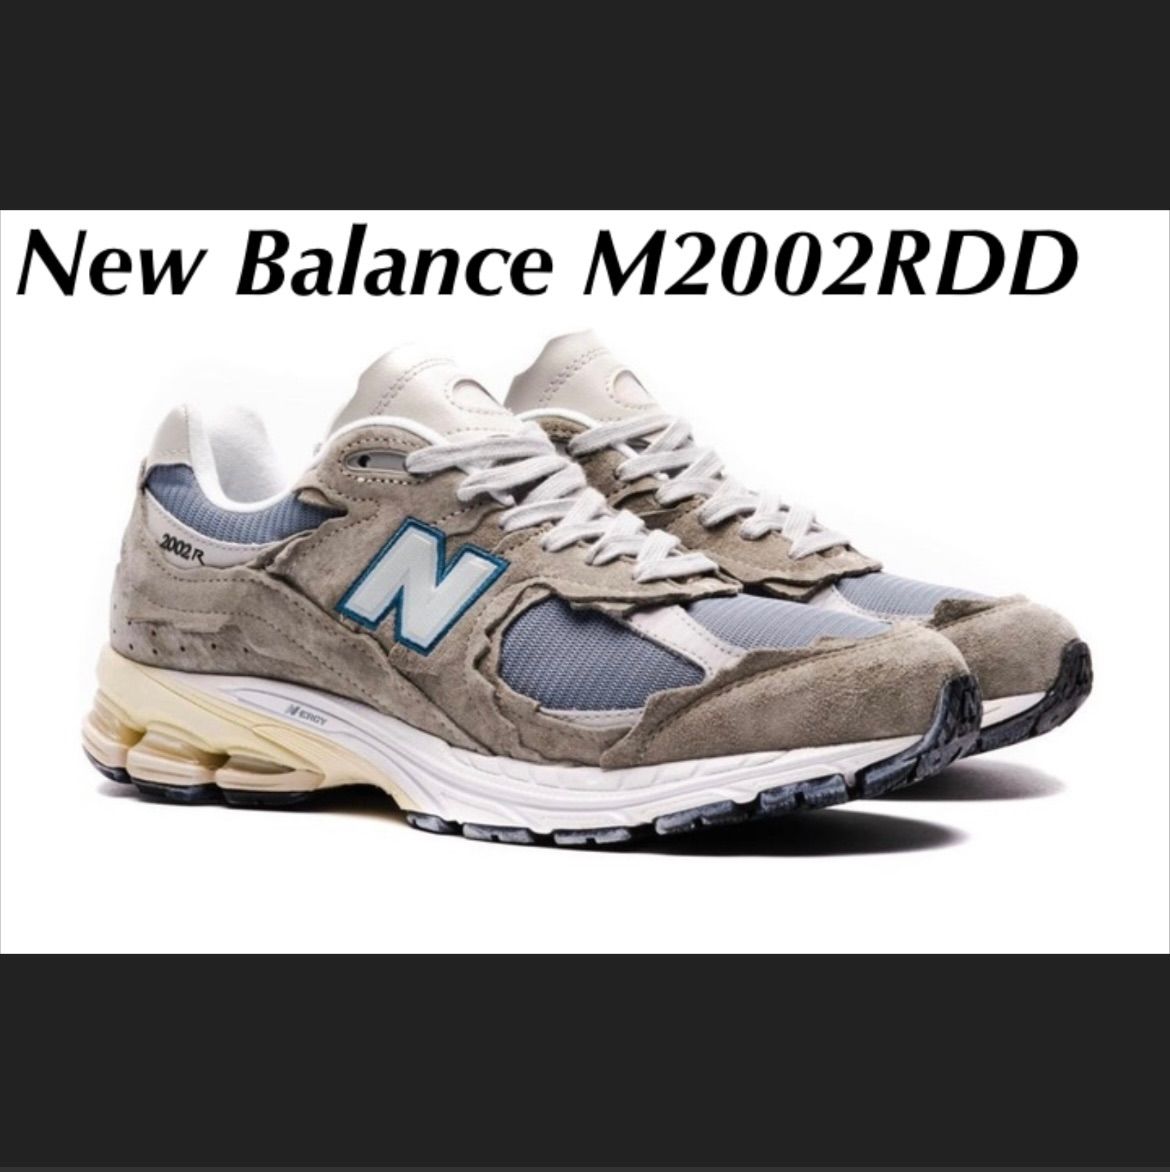 New Balance M2002RDD ニューバランス ミラージュグレー